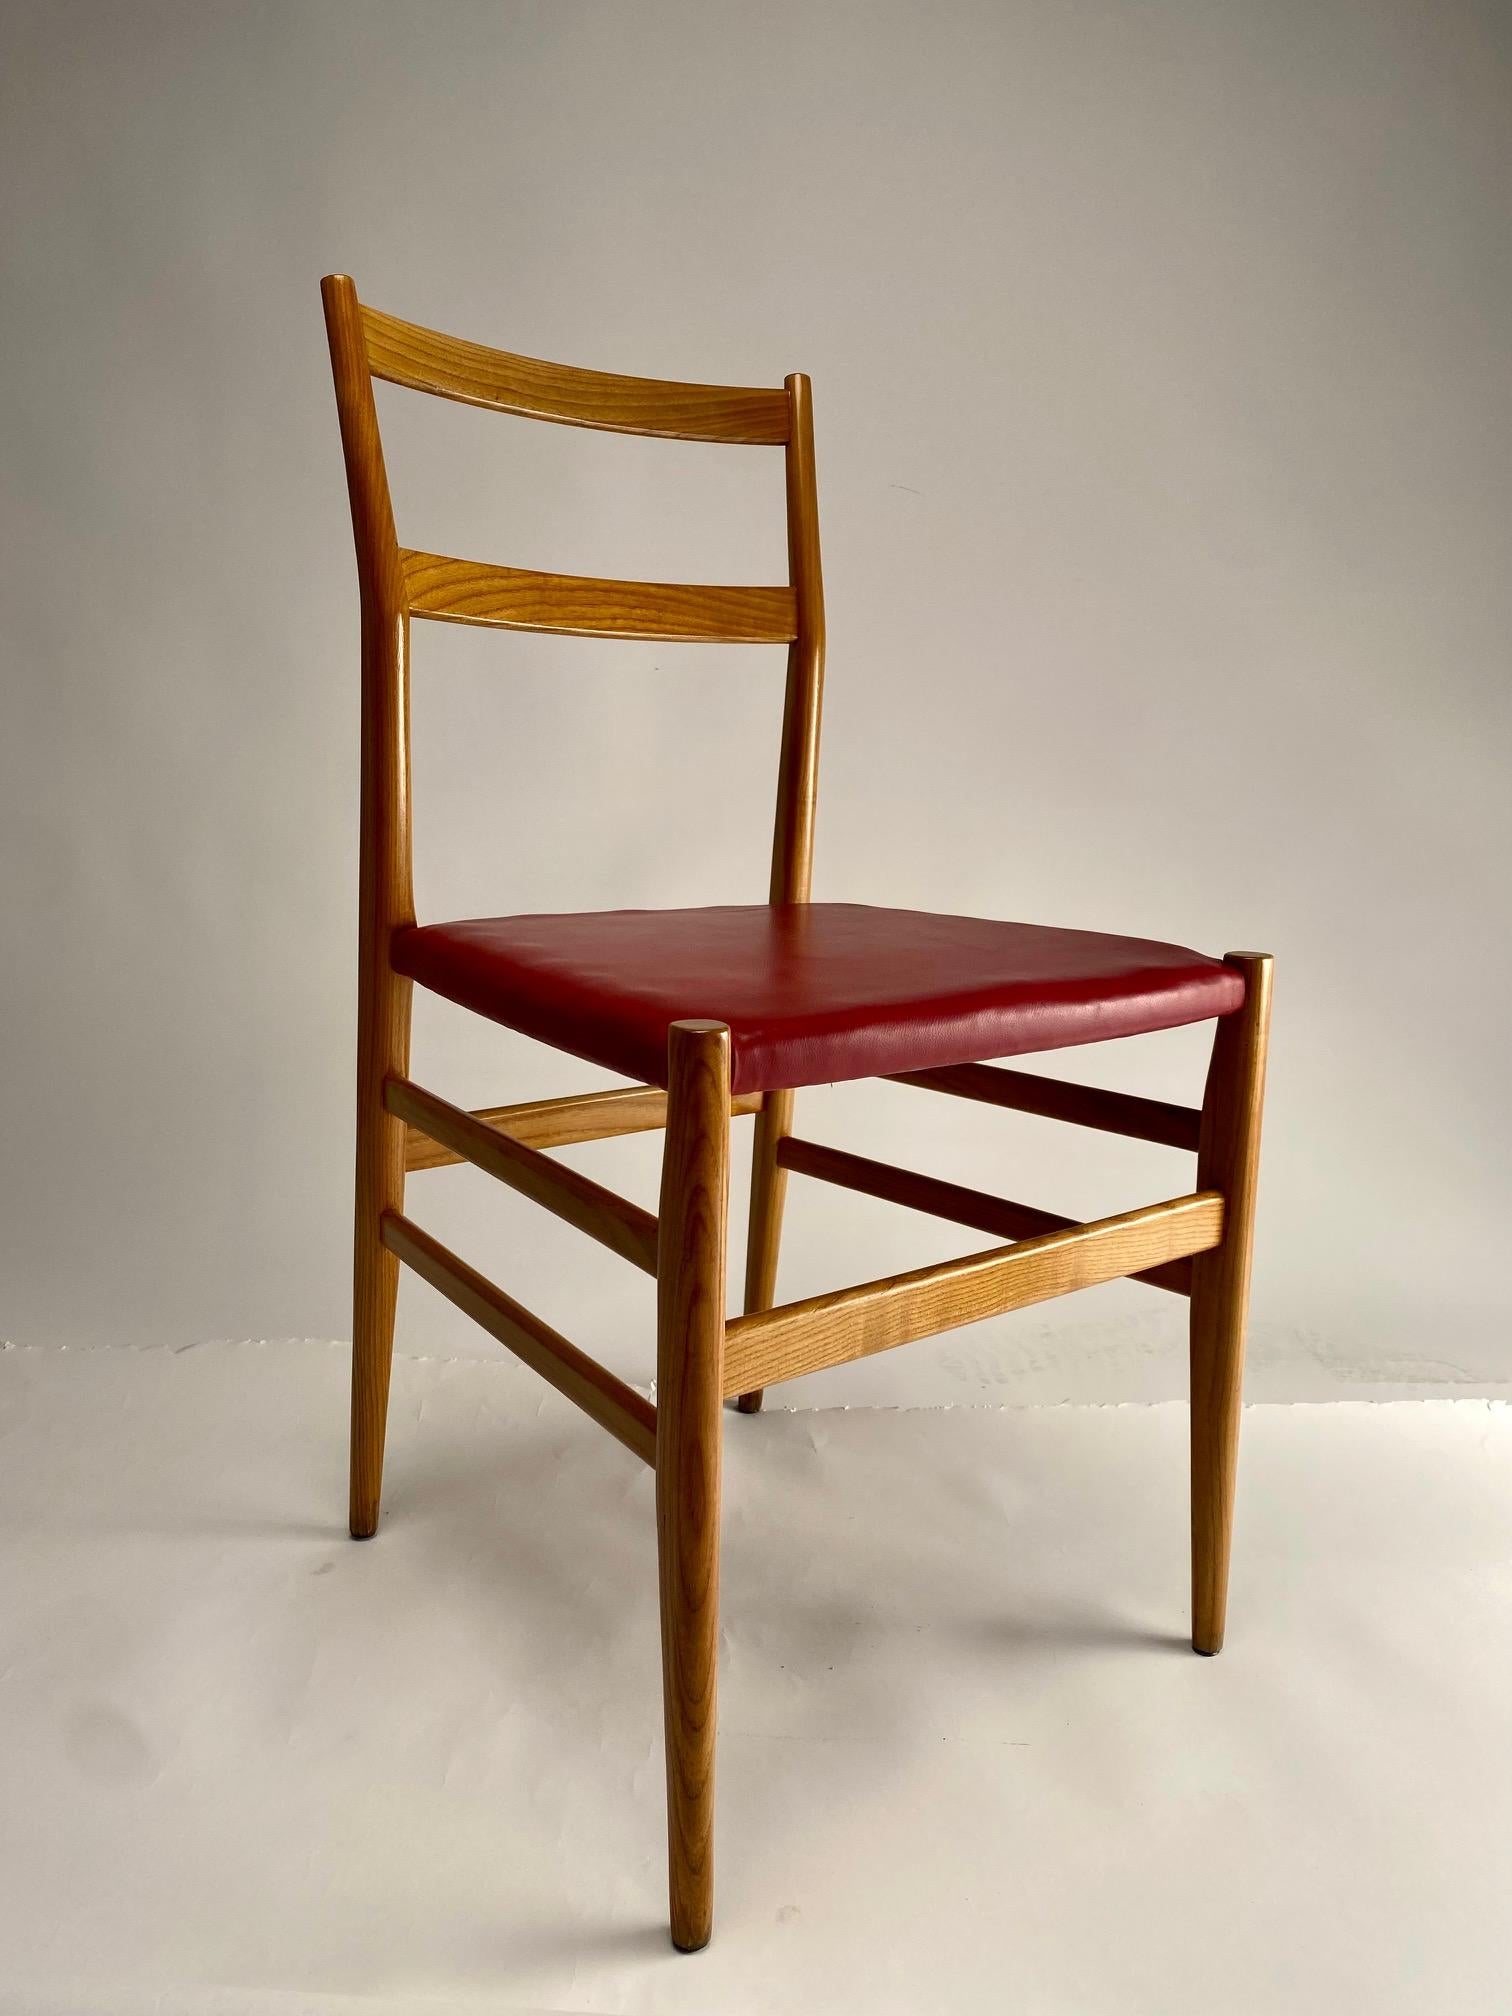 Leggera est la chaise conçue en 1952 par Gio Ponti en collaboration avec Cesare Cassina et les artisans de l'entreprise. Une icône du design Icone qui représente la chaise en bois par excellence, encore très actuelle aujourd'hui.

Eclectique,